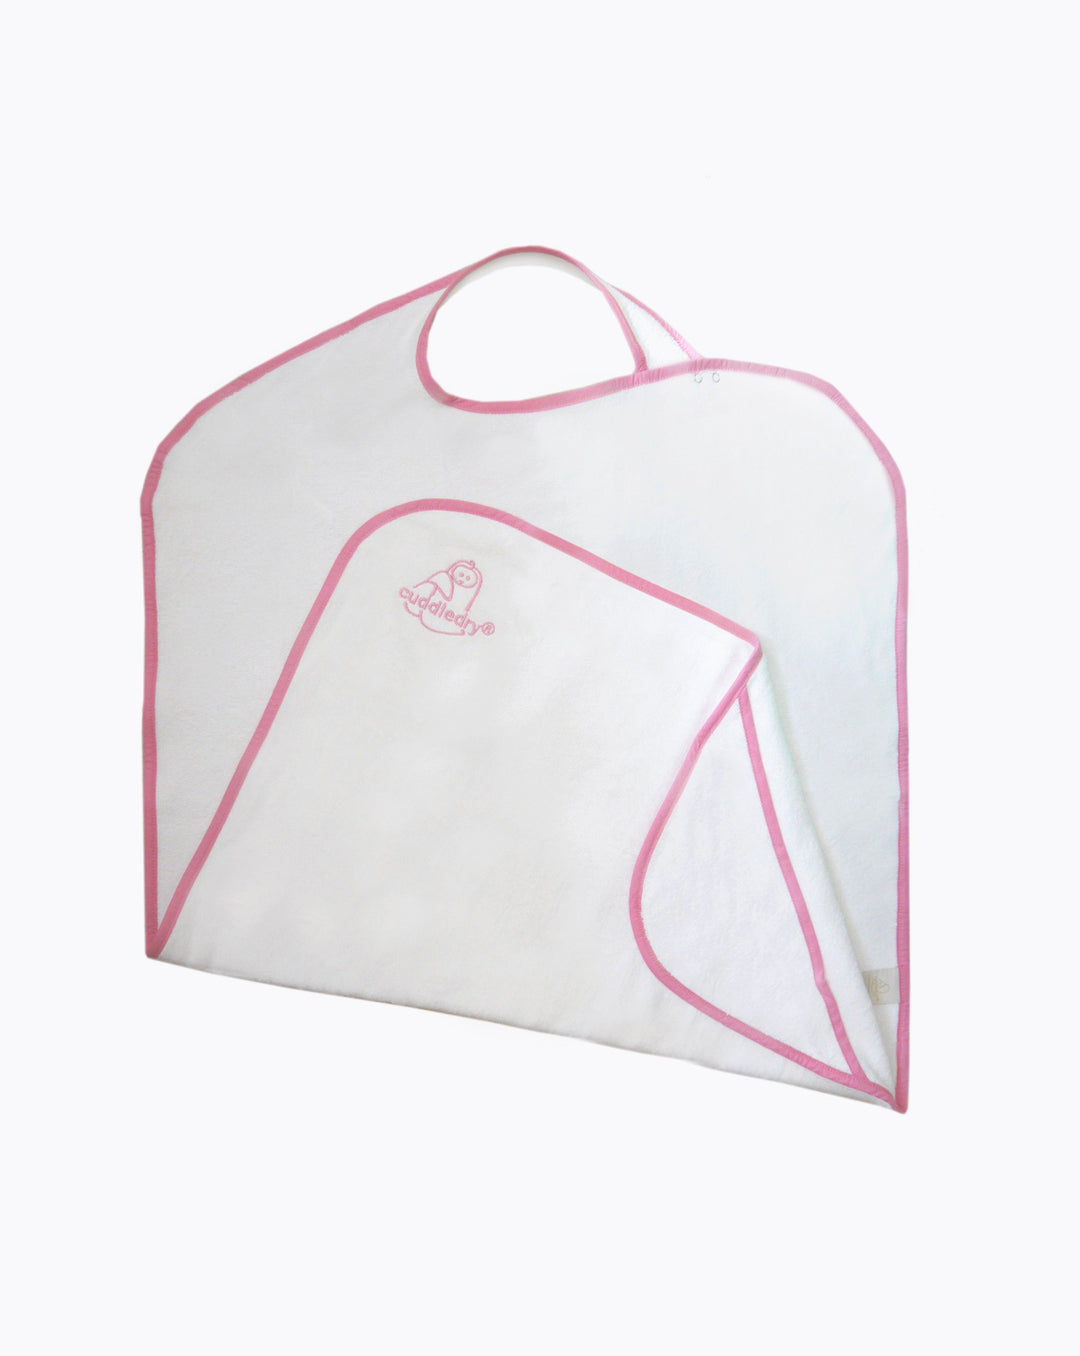 Cuddledry | hands free baby towel | pink | personalised